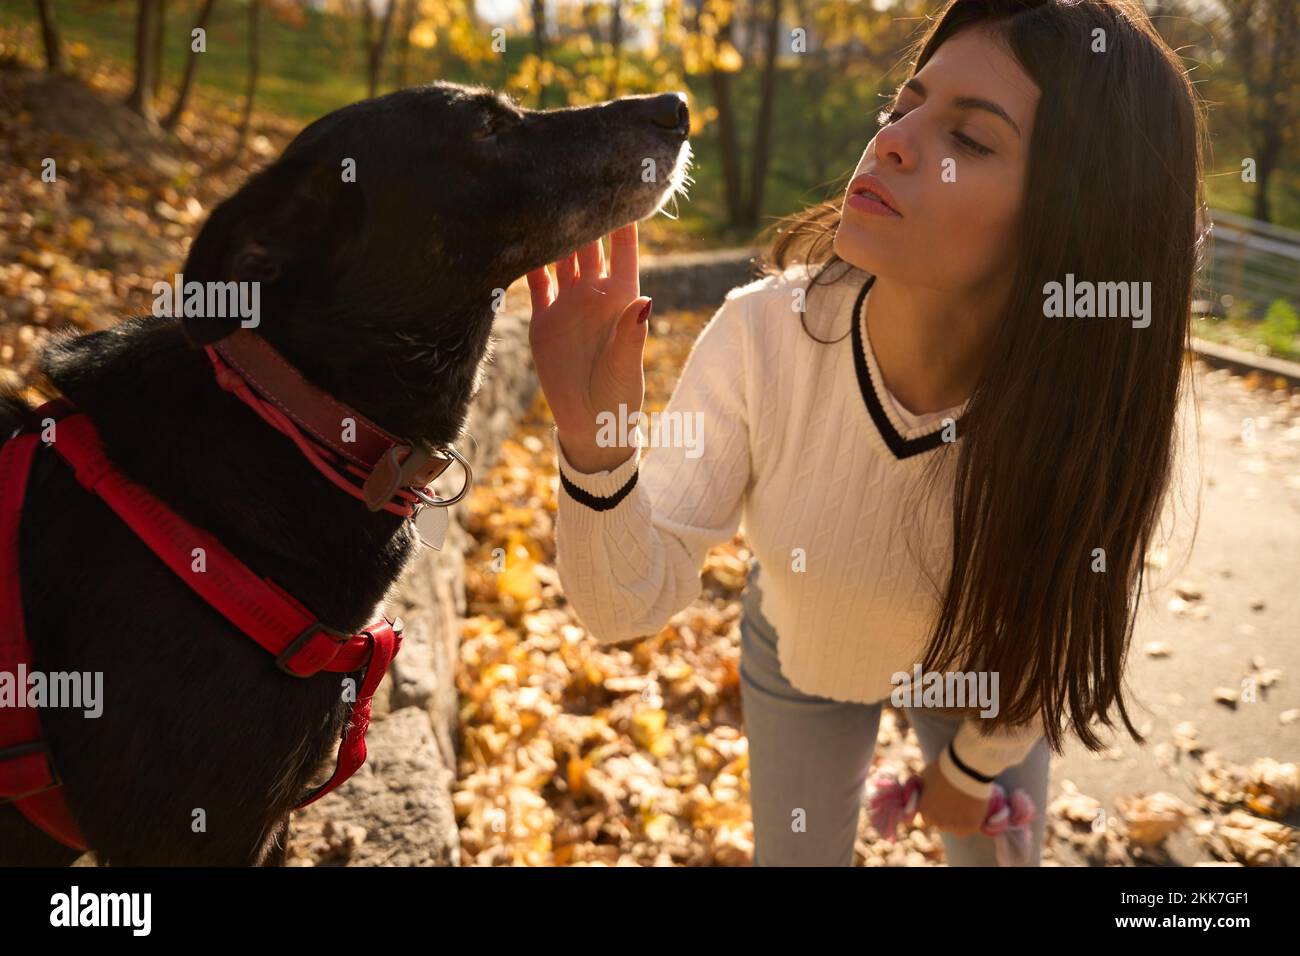 Carina giovane donna nel parco comunica con un cane nero Foto Stock